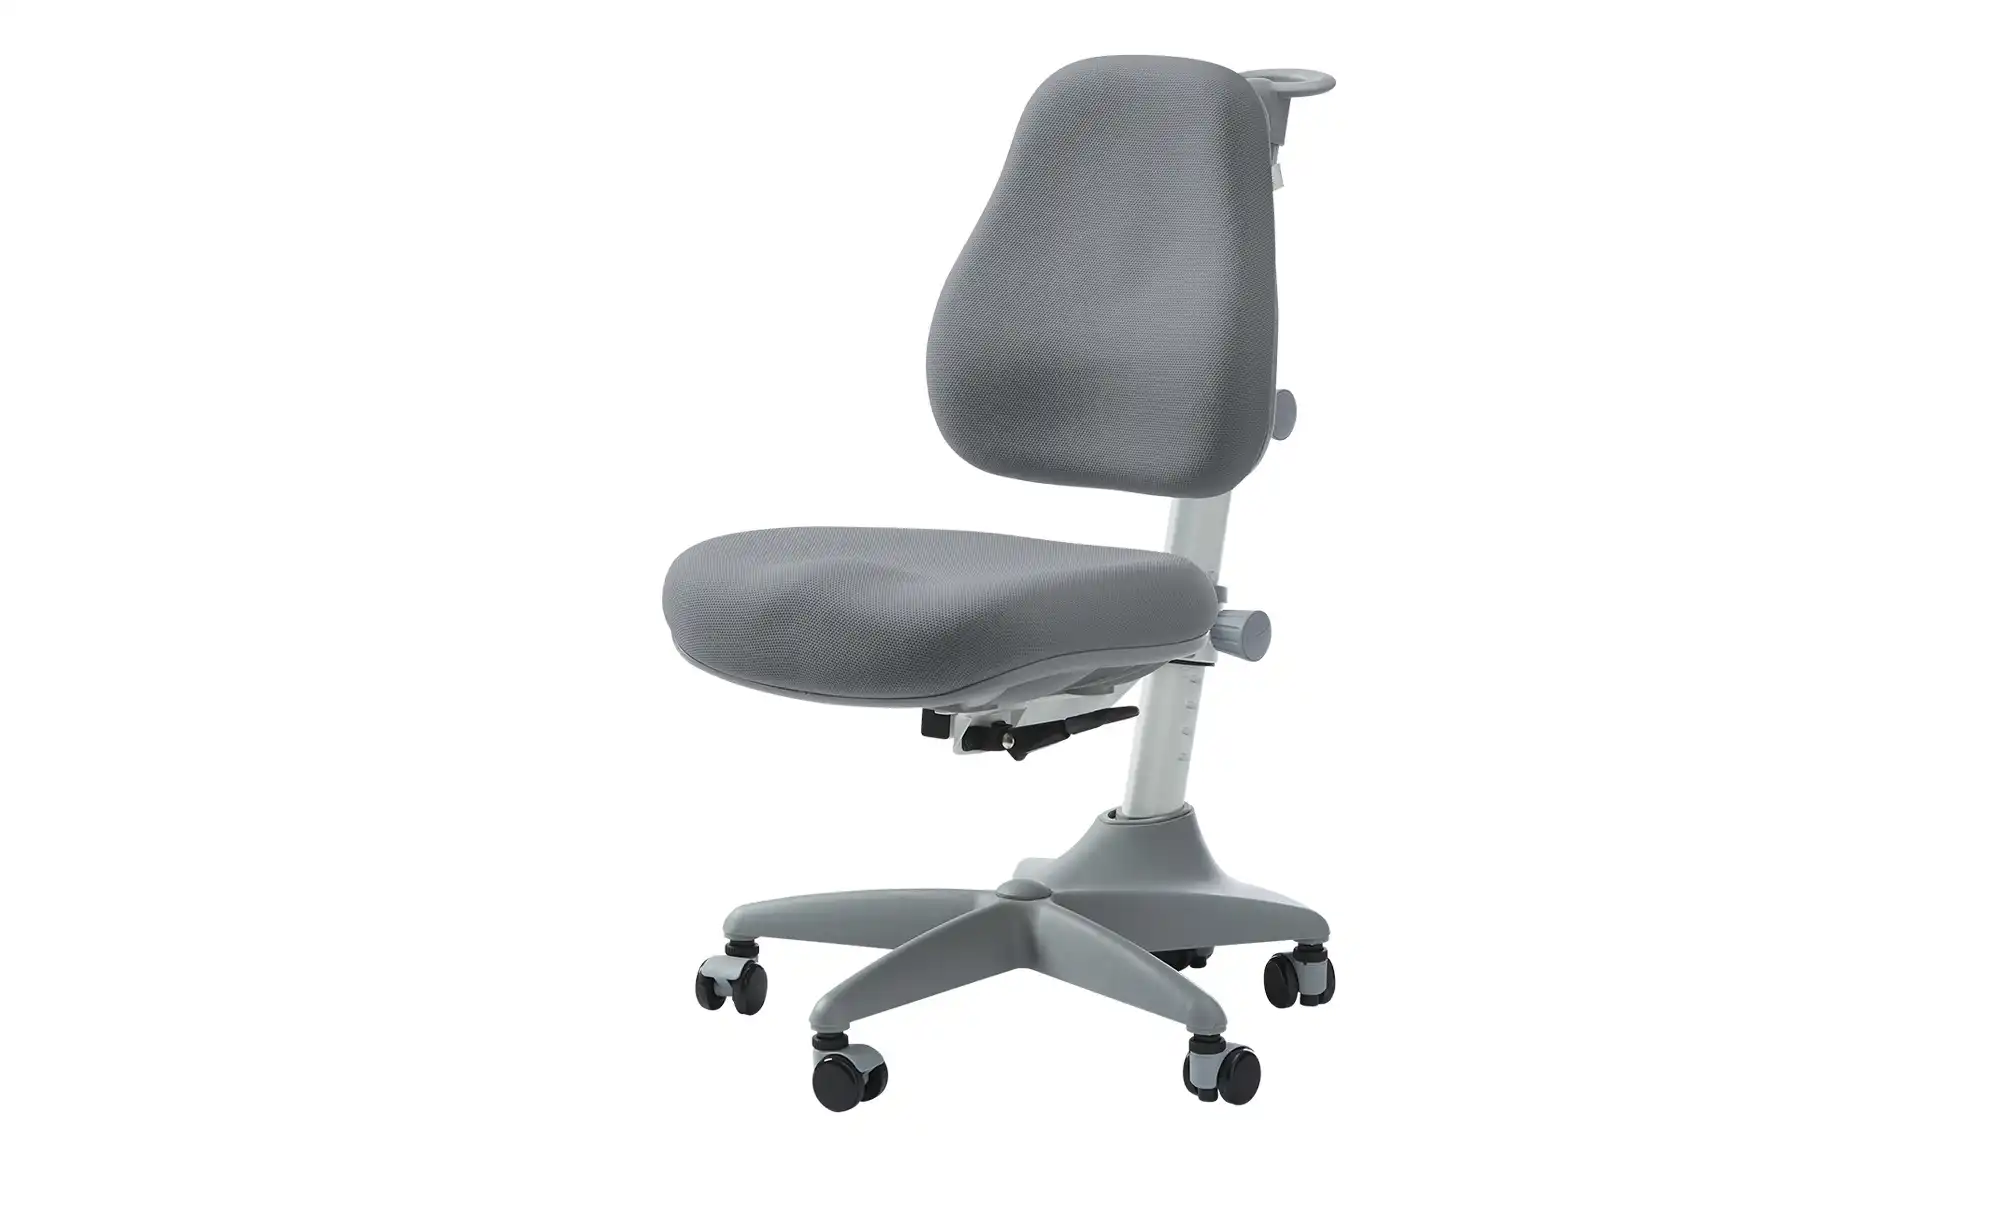 FLEXA Schüler Schreibtischstuhl Verto ¦ grau Stühle Bürostühle Drehstühle Höffner  - Onlineshop Möbel Höffner